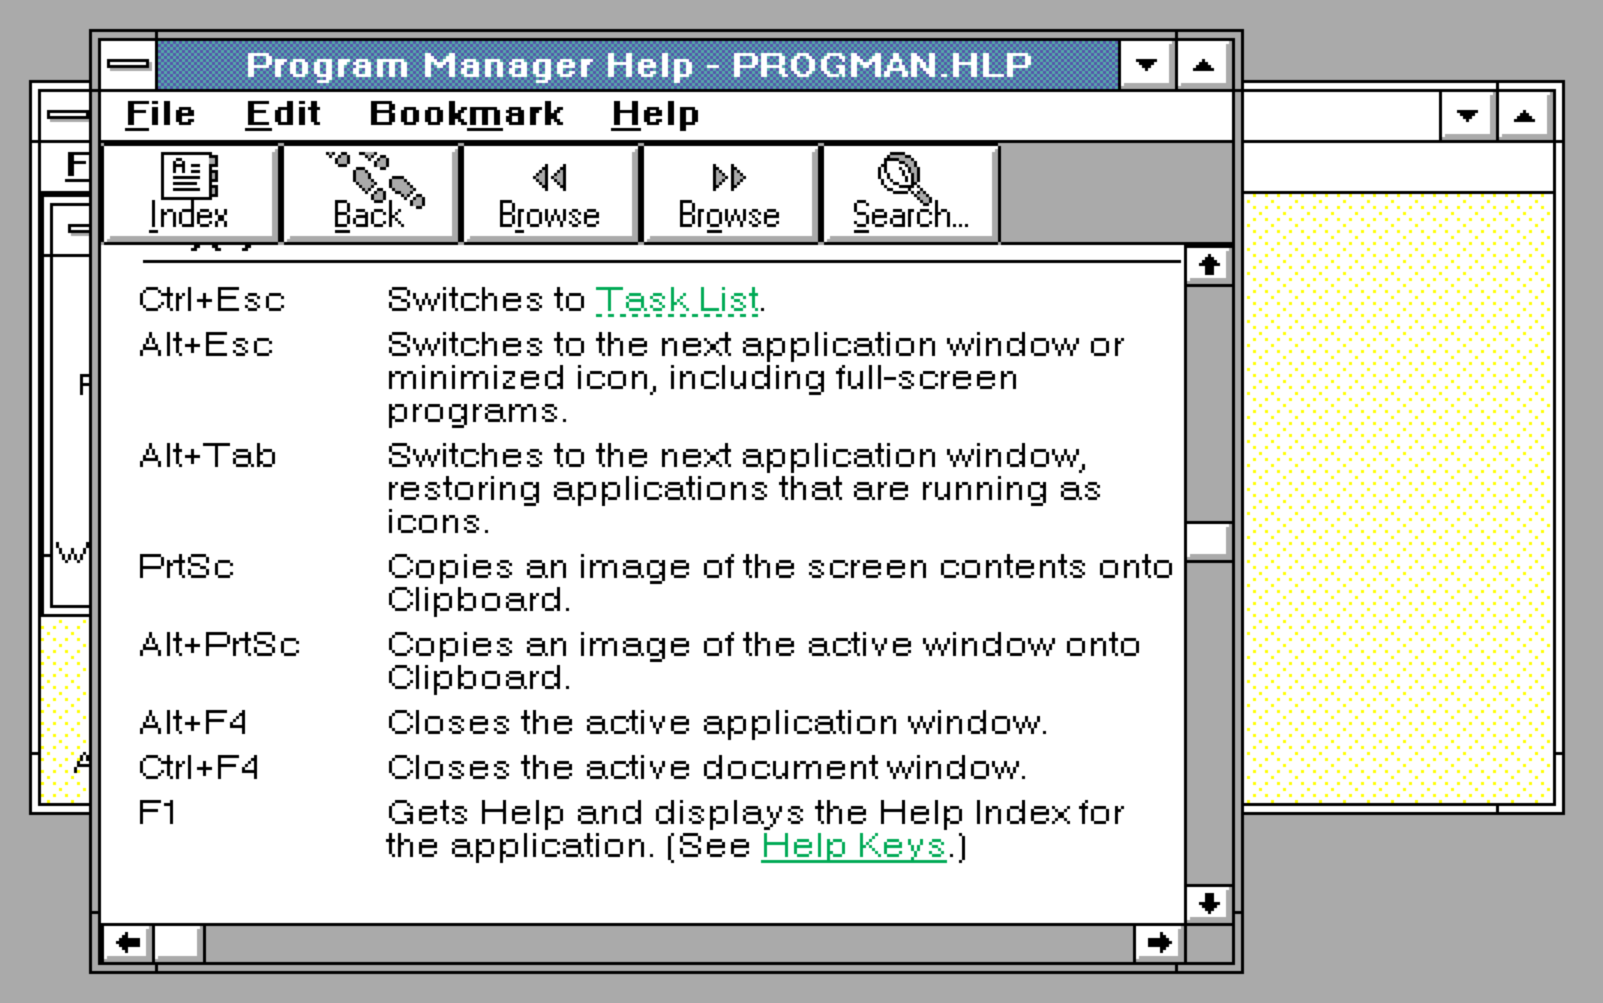 Finestra della Guida di Windows 3.0, che descrive in dettaglio la funzione del tasto Print Screen. 